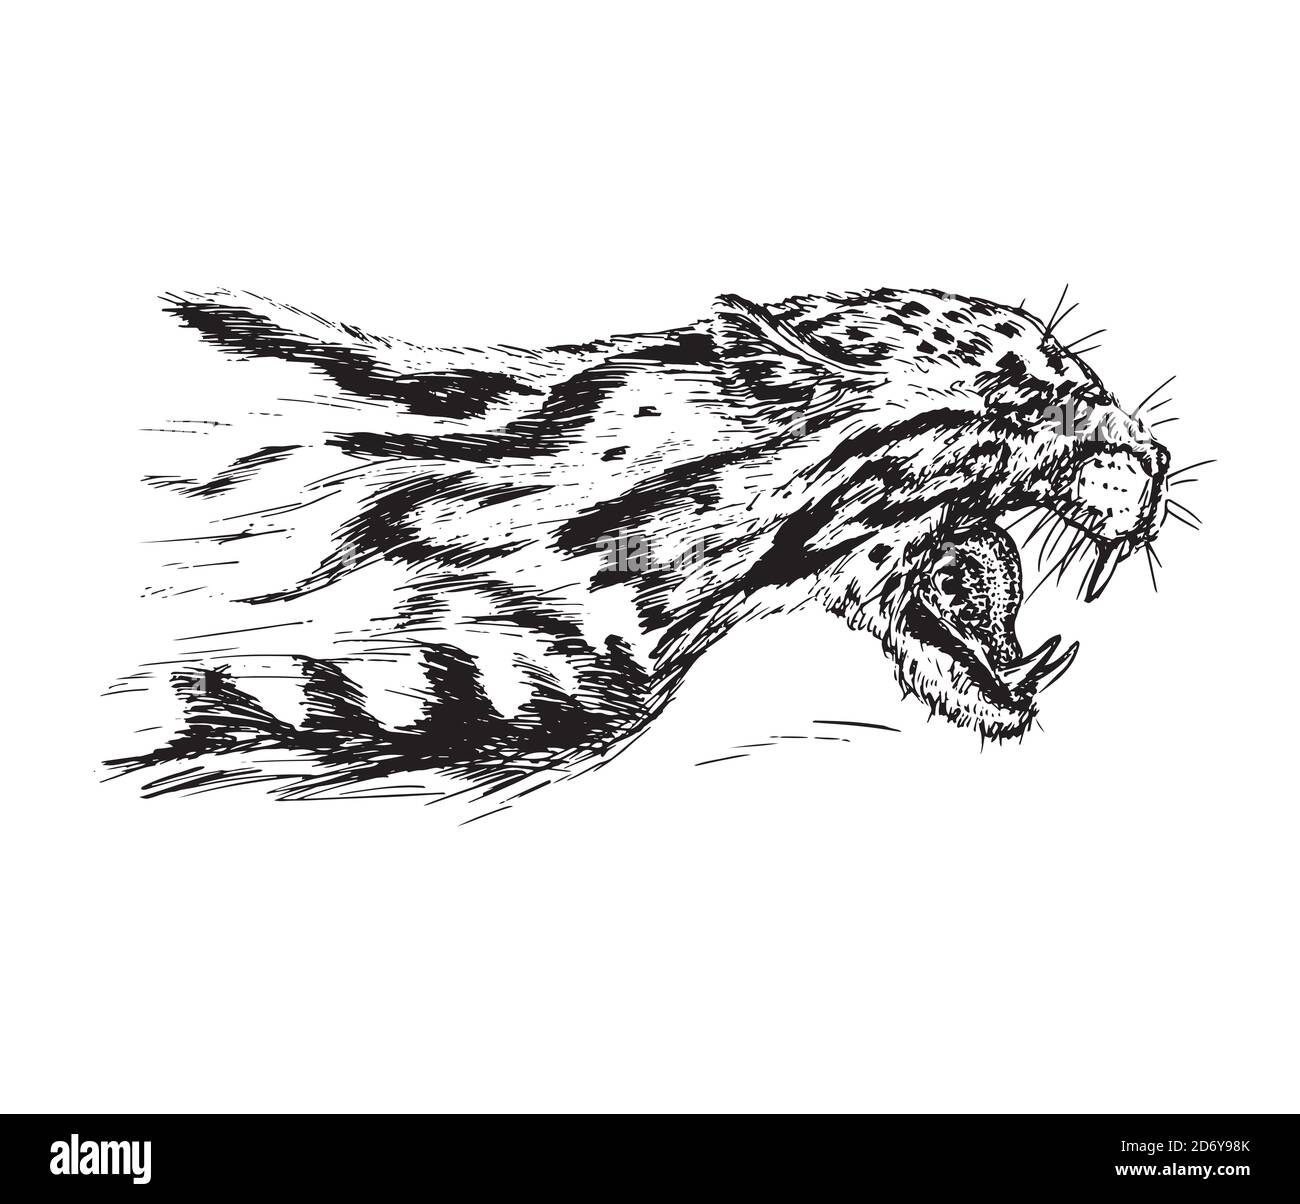 Gepard knurrt, hat einen verbitterten Mund geöffnet, Eckzähne, handgezeichnete Tinte Doodle, Skizze, schwarz-weiße Illustration Stockfoto